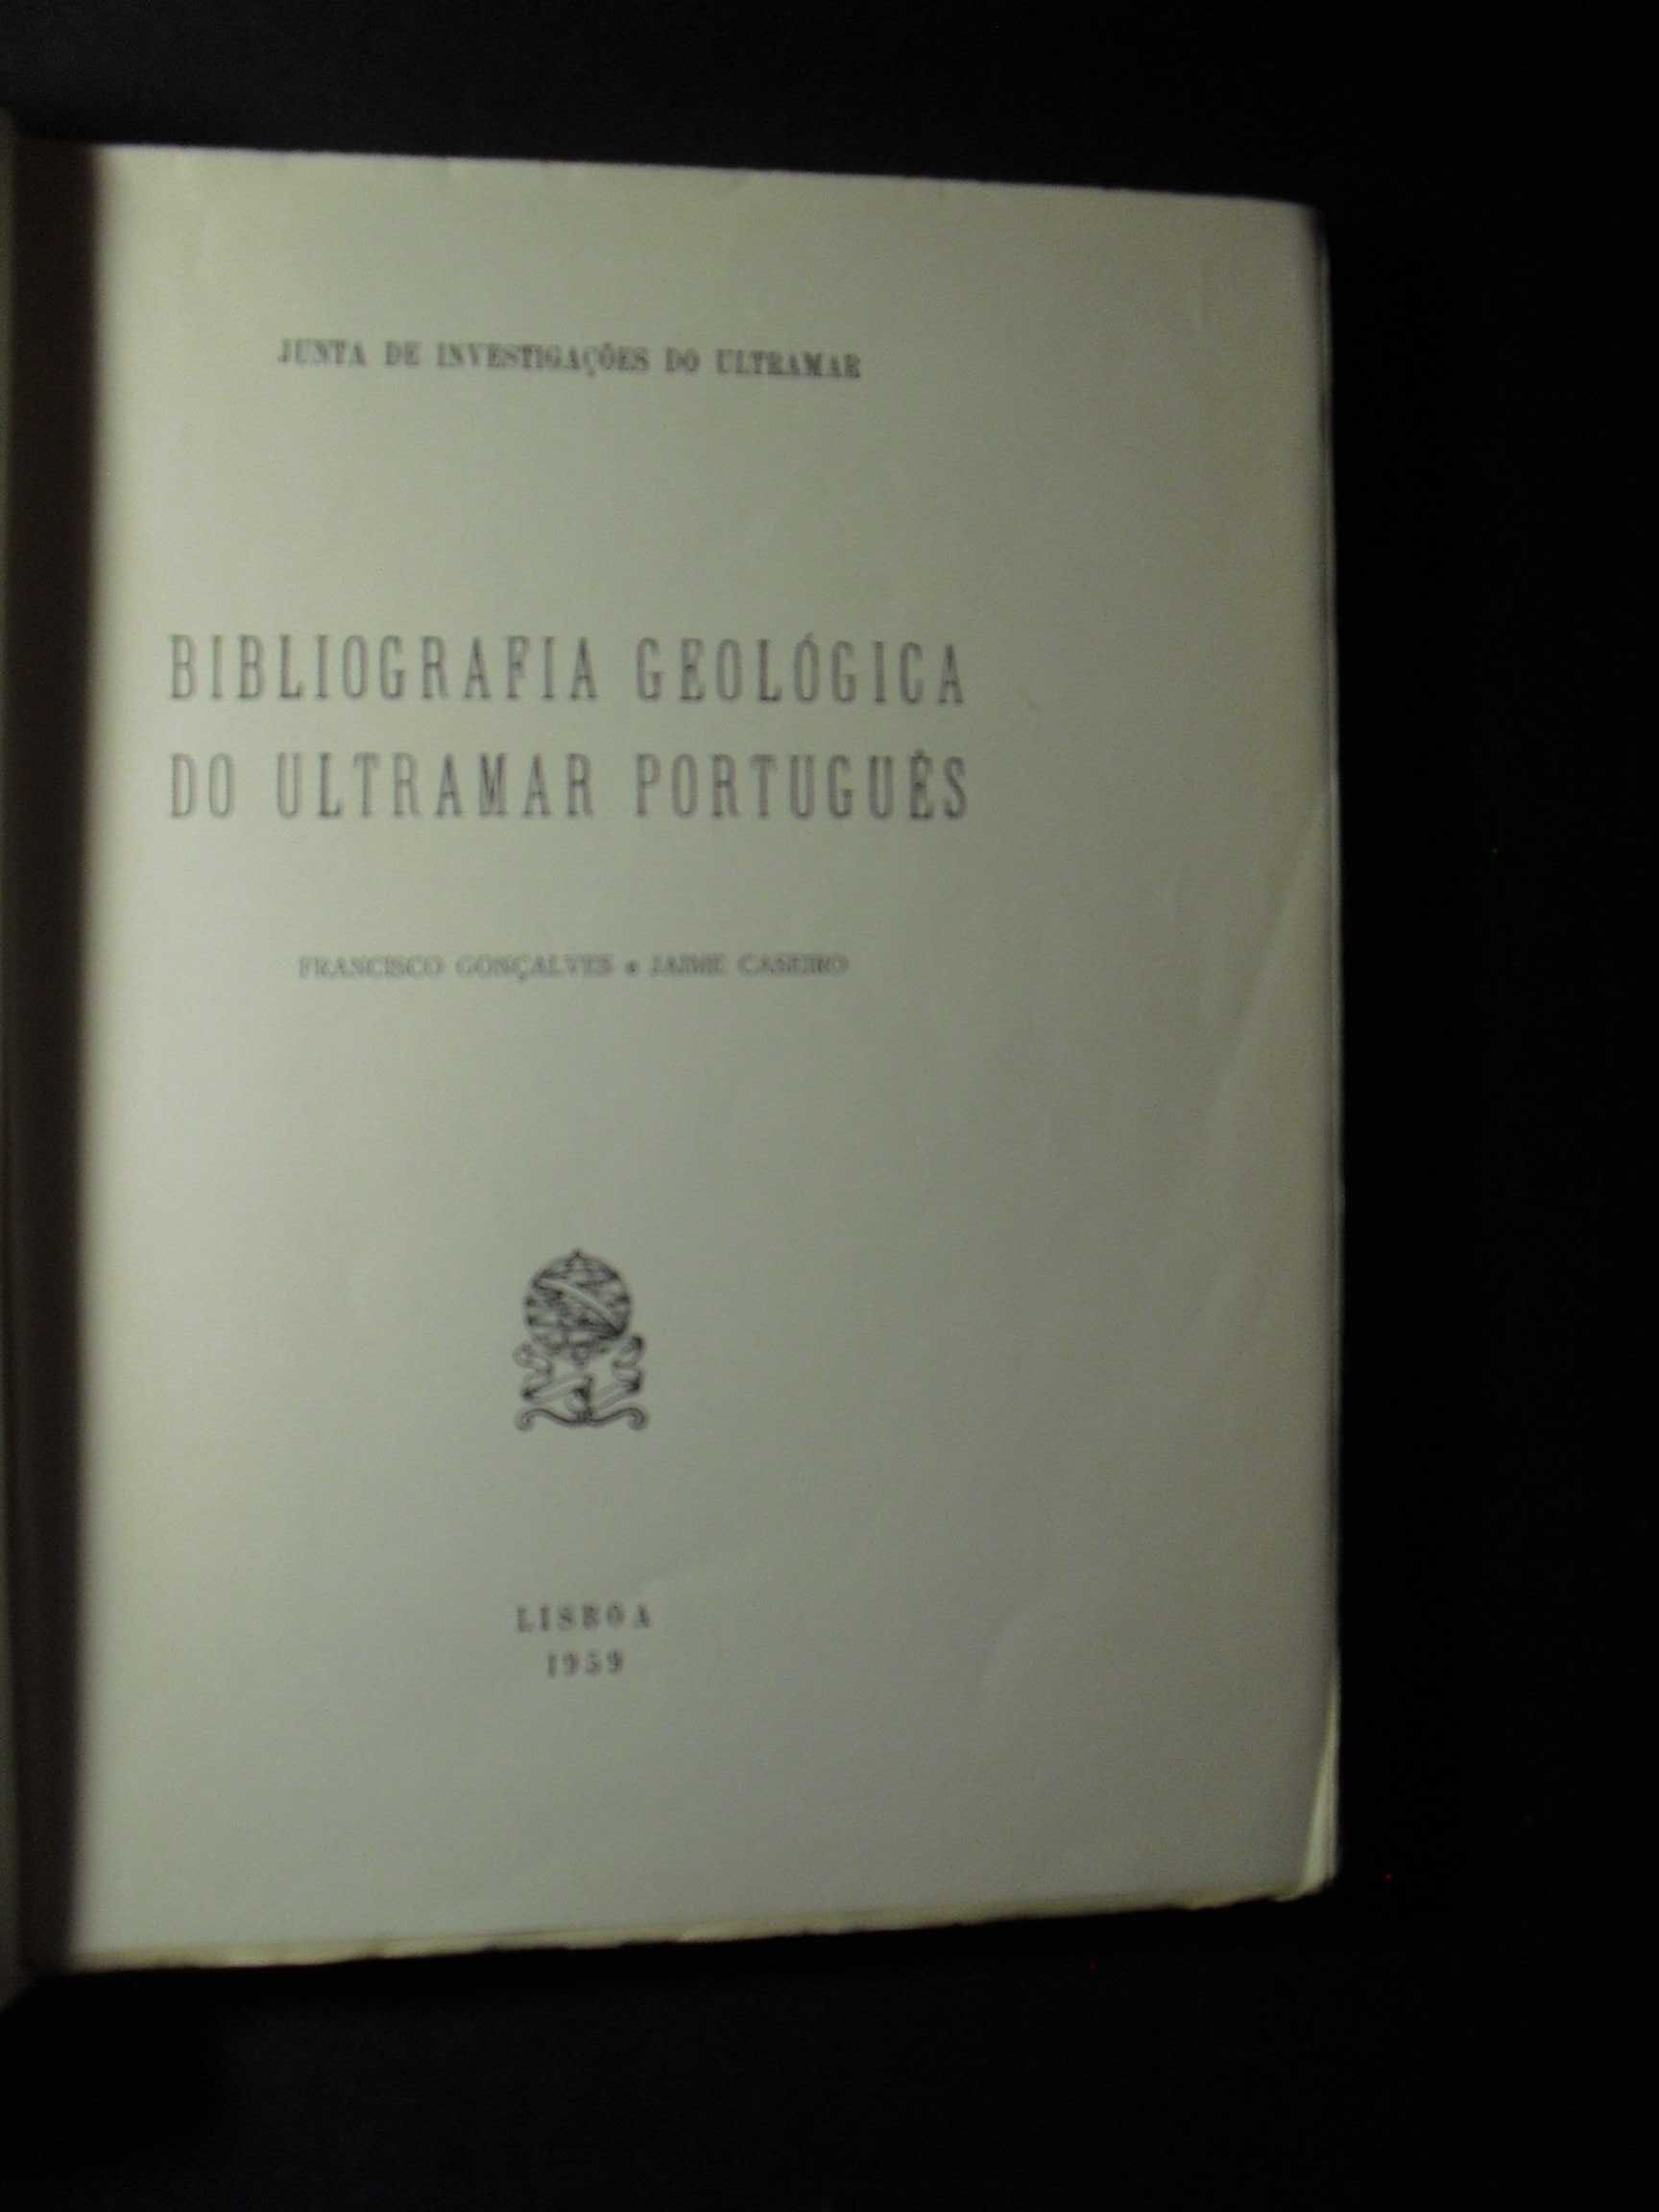 Gonçalves (Francisco);Bibliografia Geológica do Ultramar